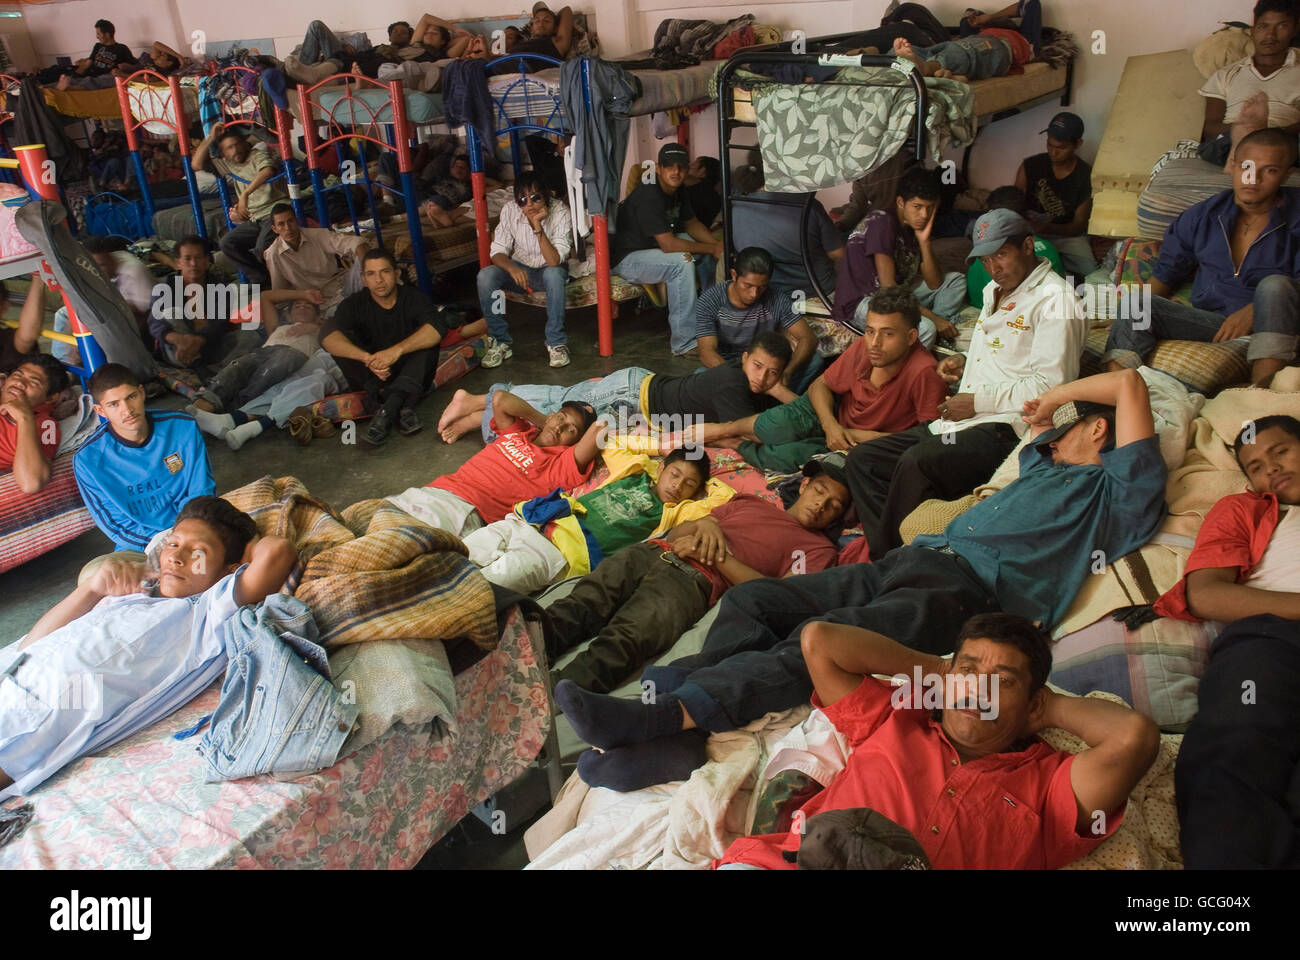 America centrale gli immigrati vivono insieme in un rifugio in Tultitlan, Messico eccessivamente in condizioni di sovraffollamento. Foto Stock